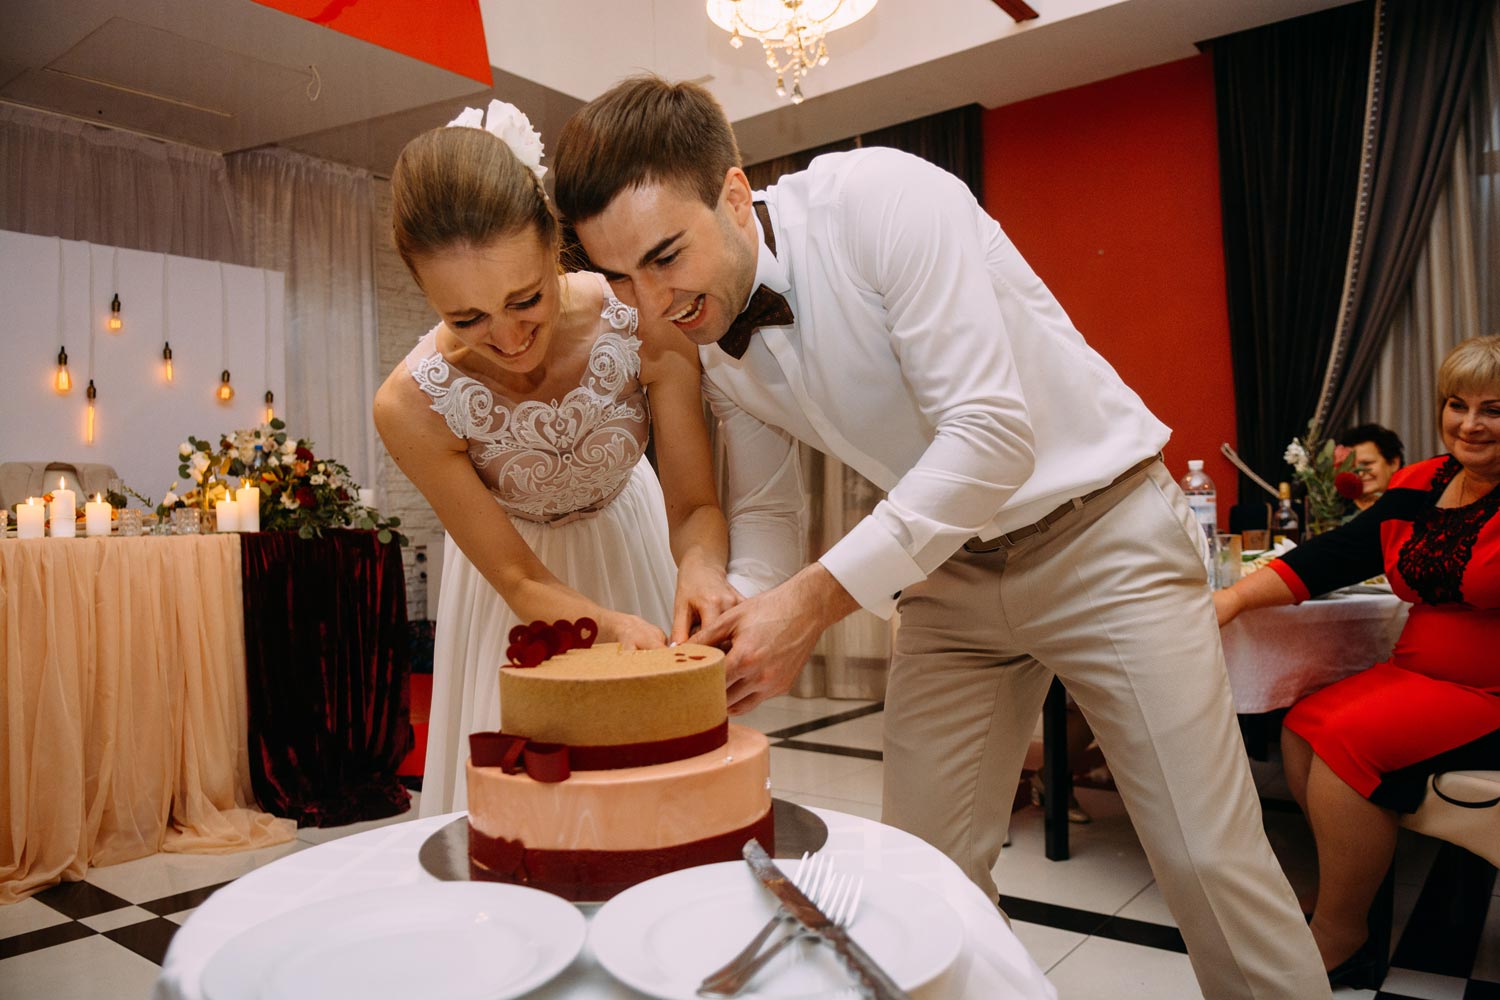 Разрезание свадебного торта. Молодожены режут торт. Современные конкурсы на свадьбу. Как провести свадьбу без тамады